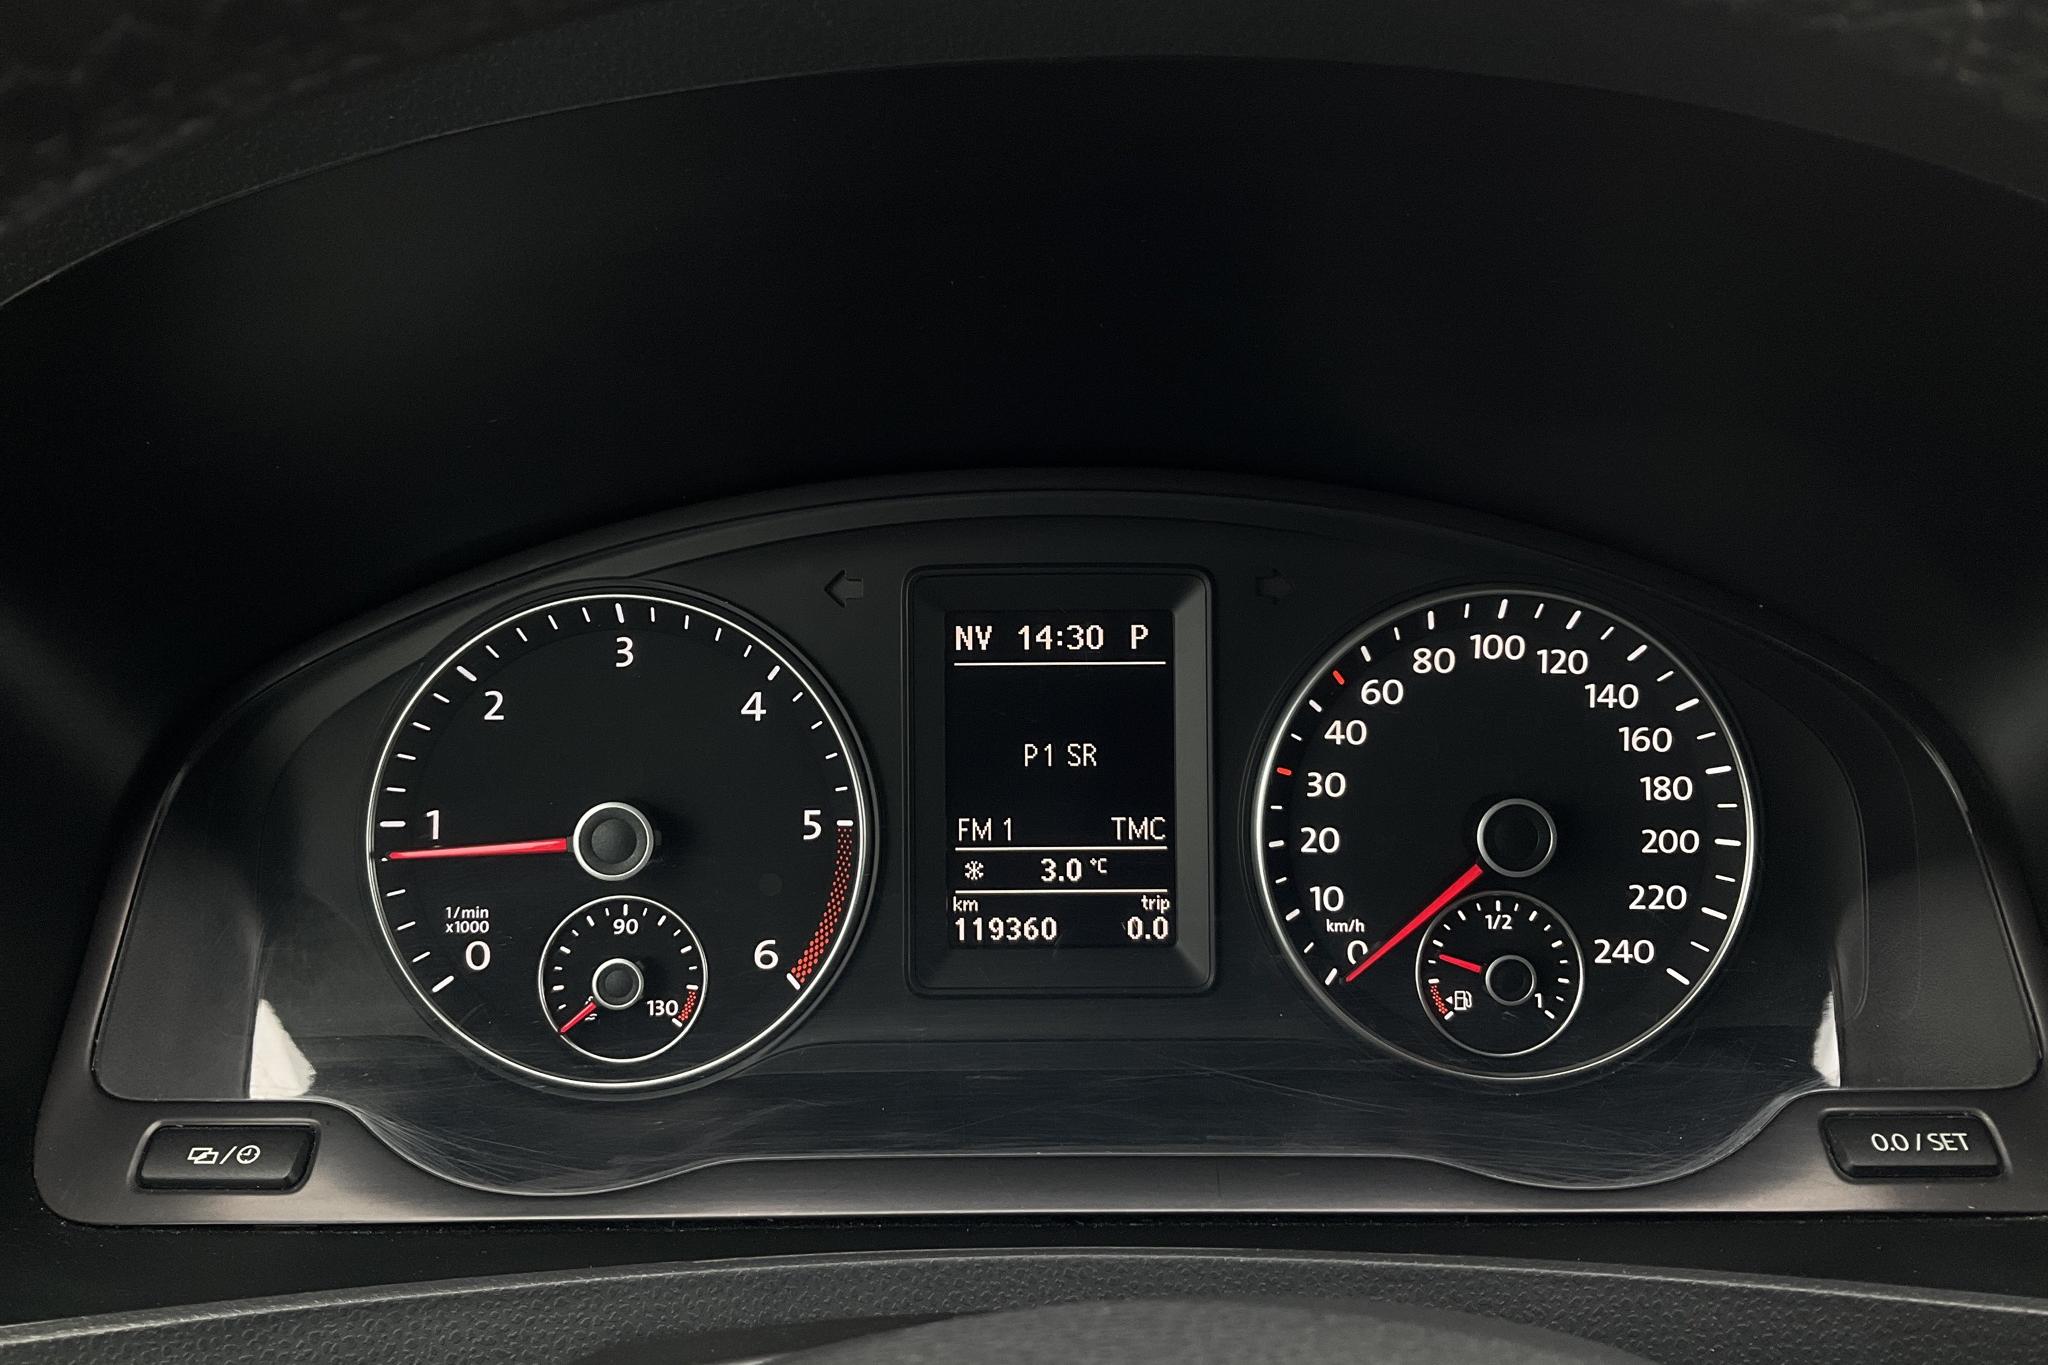 VW Caravelle T5 2.0 TDI (140hk) - 119 360 km - Automatic - black - 2015